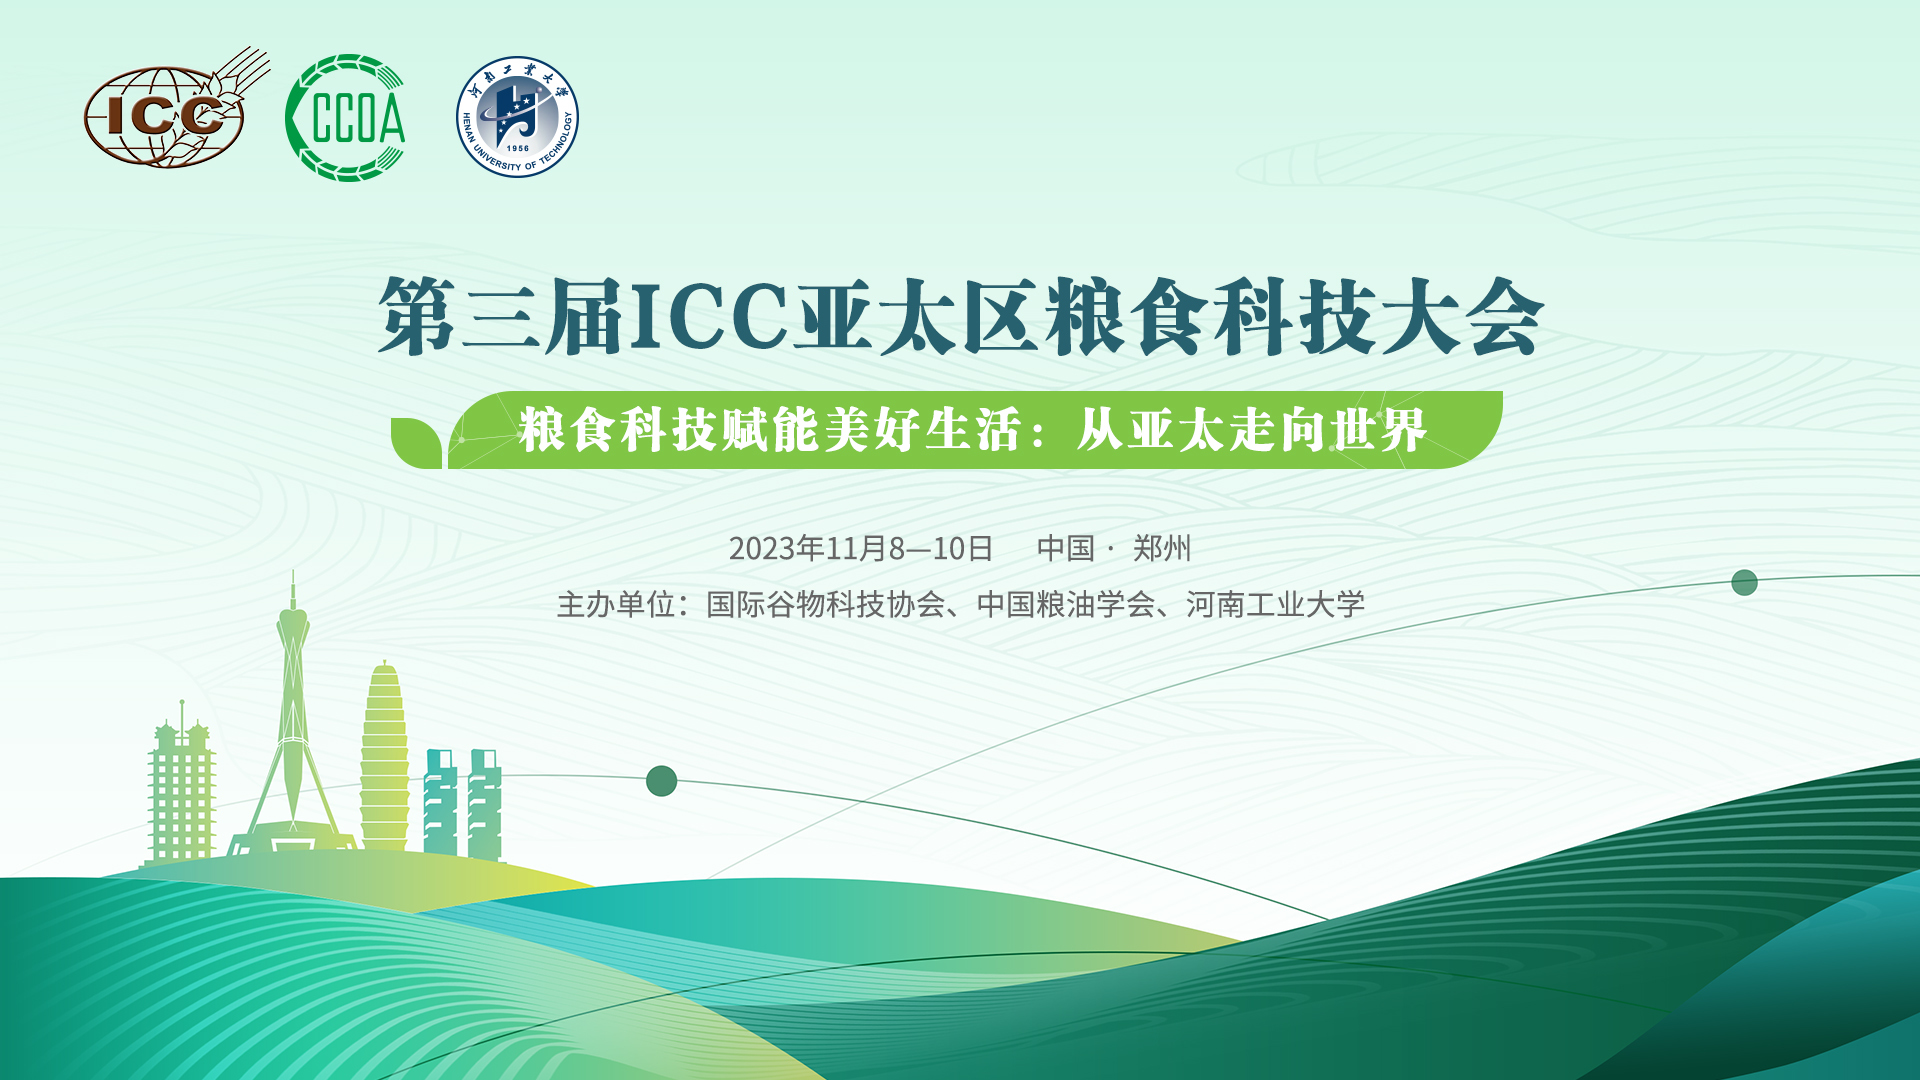 第三届ICC亚太区粮食科技大会